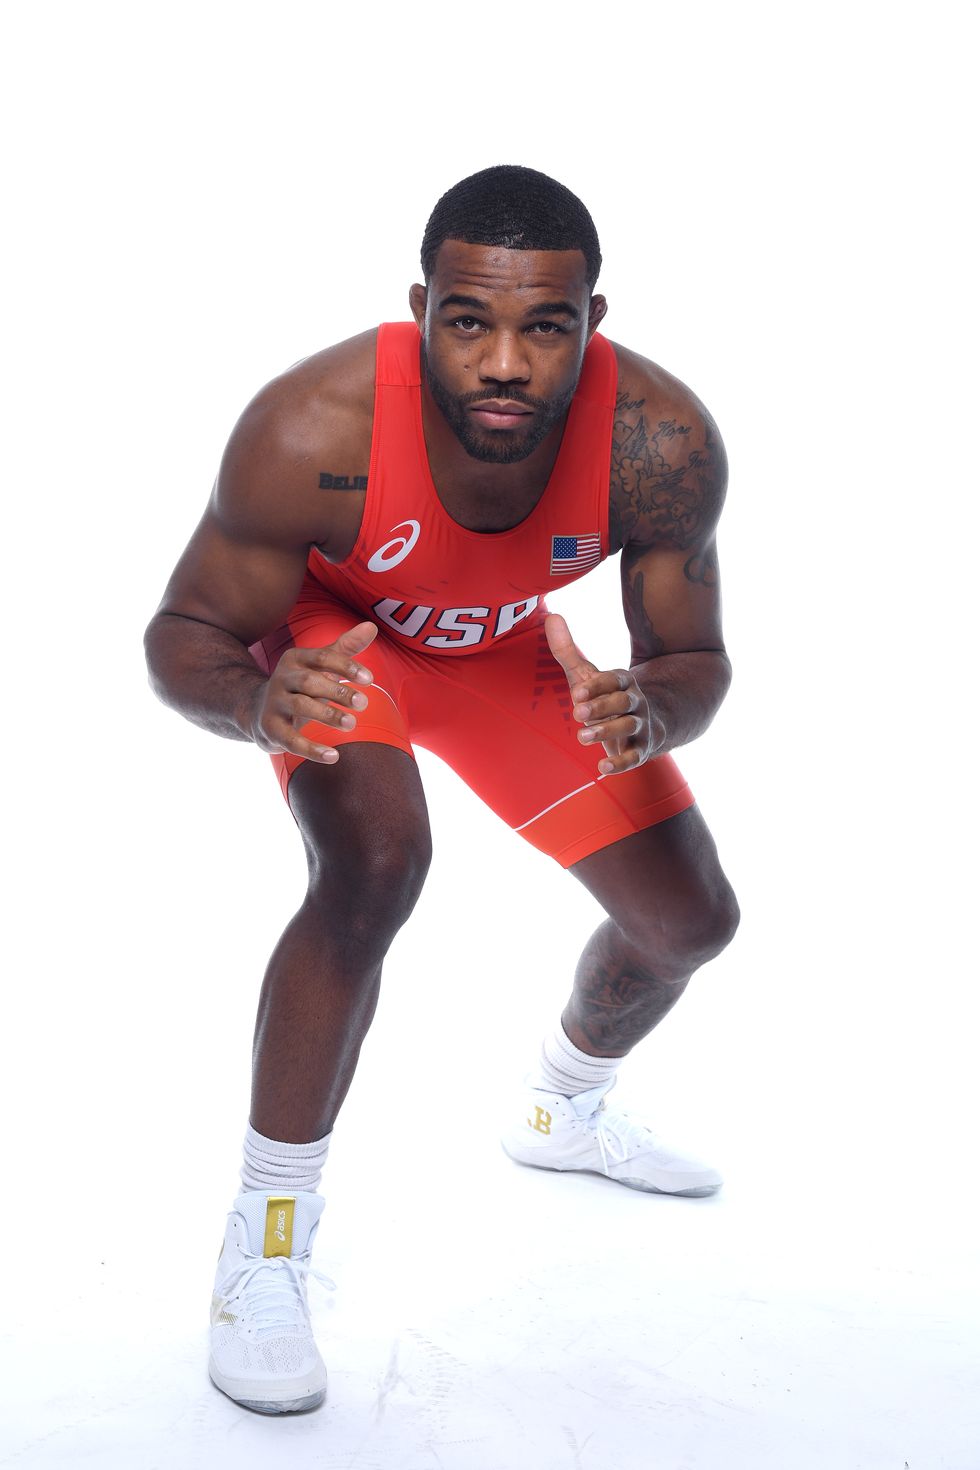 How Olympic Wrestler Jordan Burroughs Trains for Gold